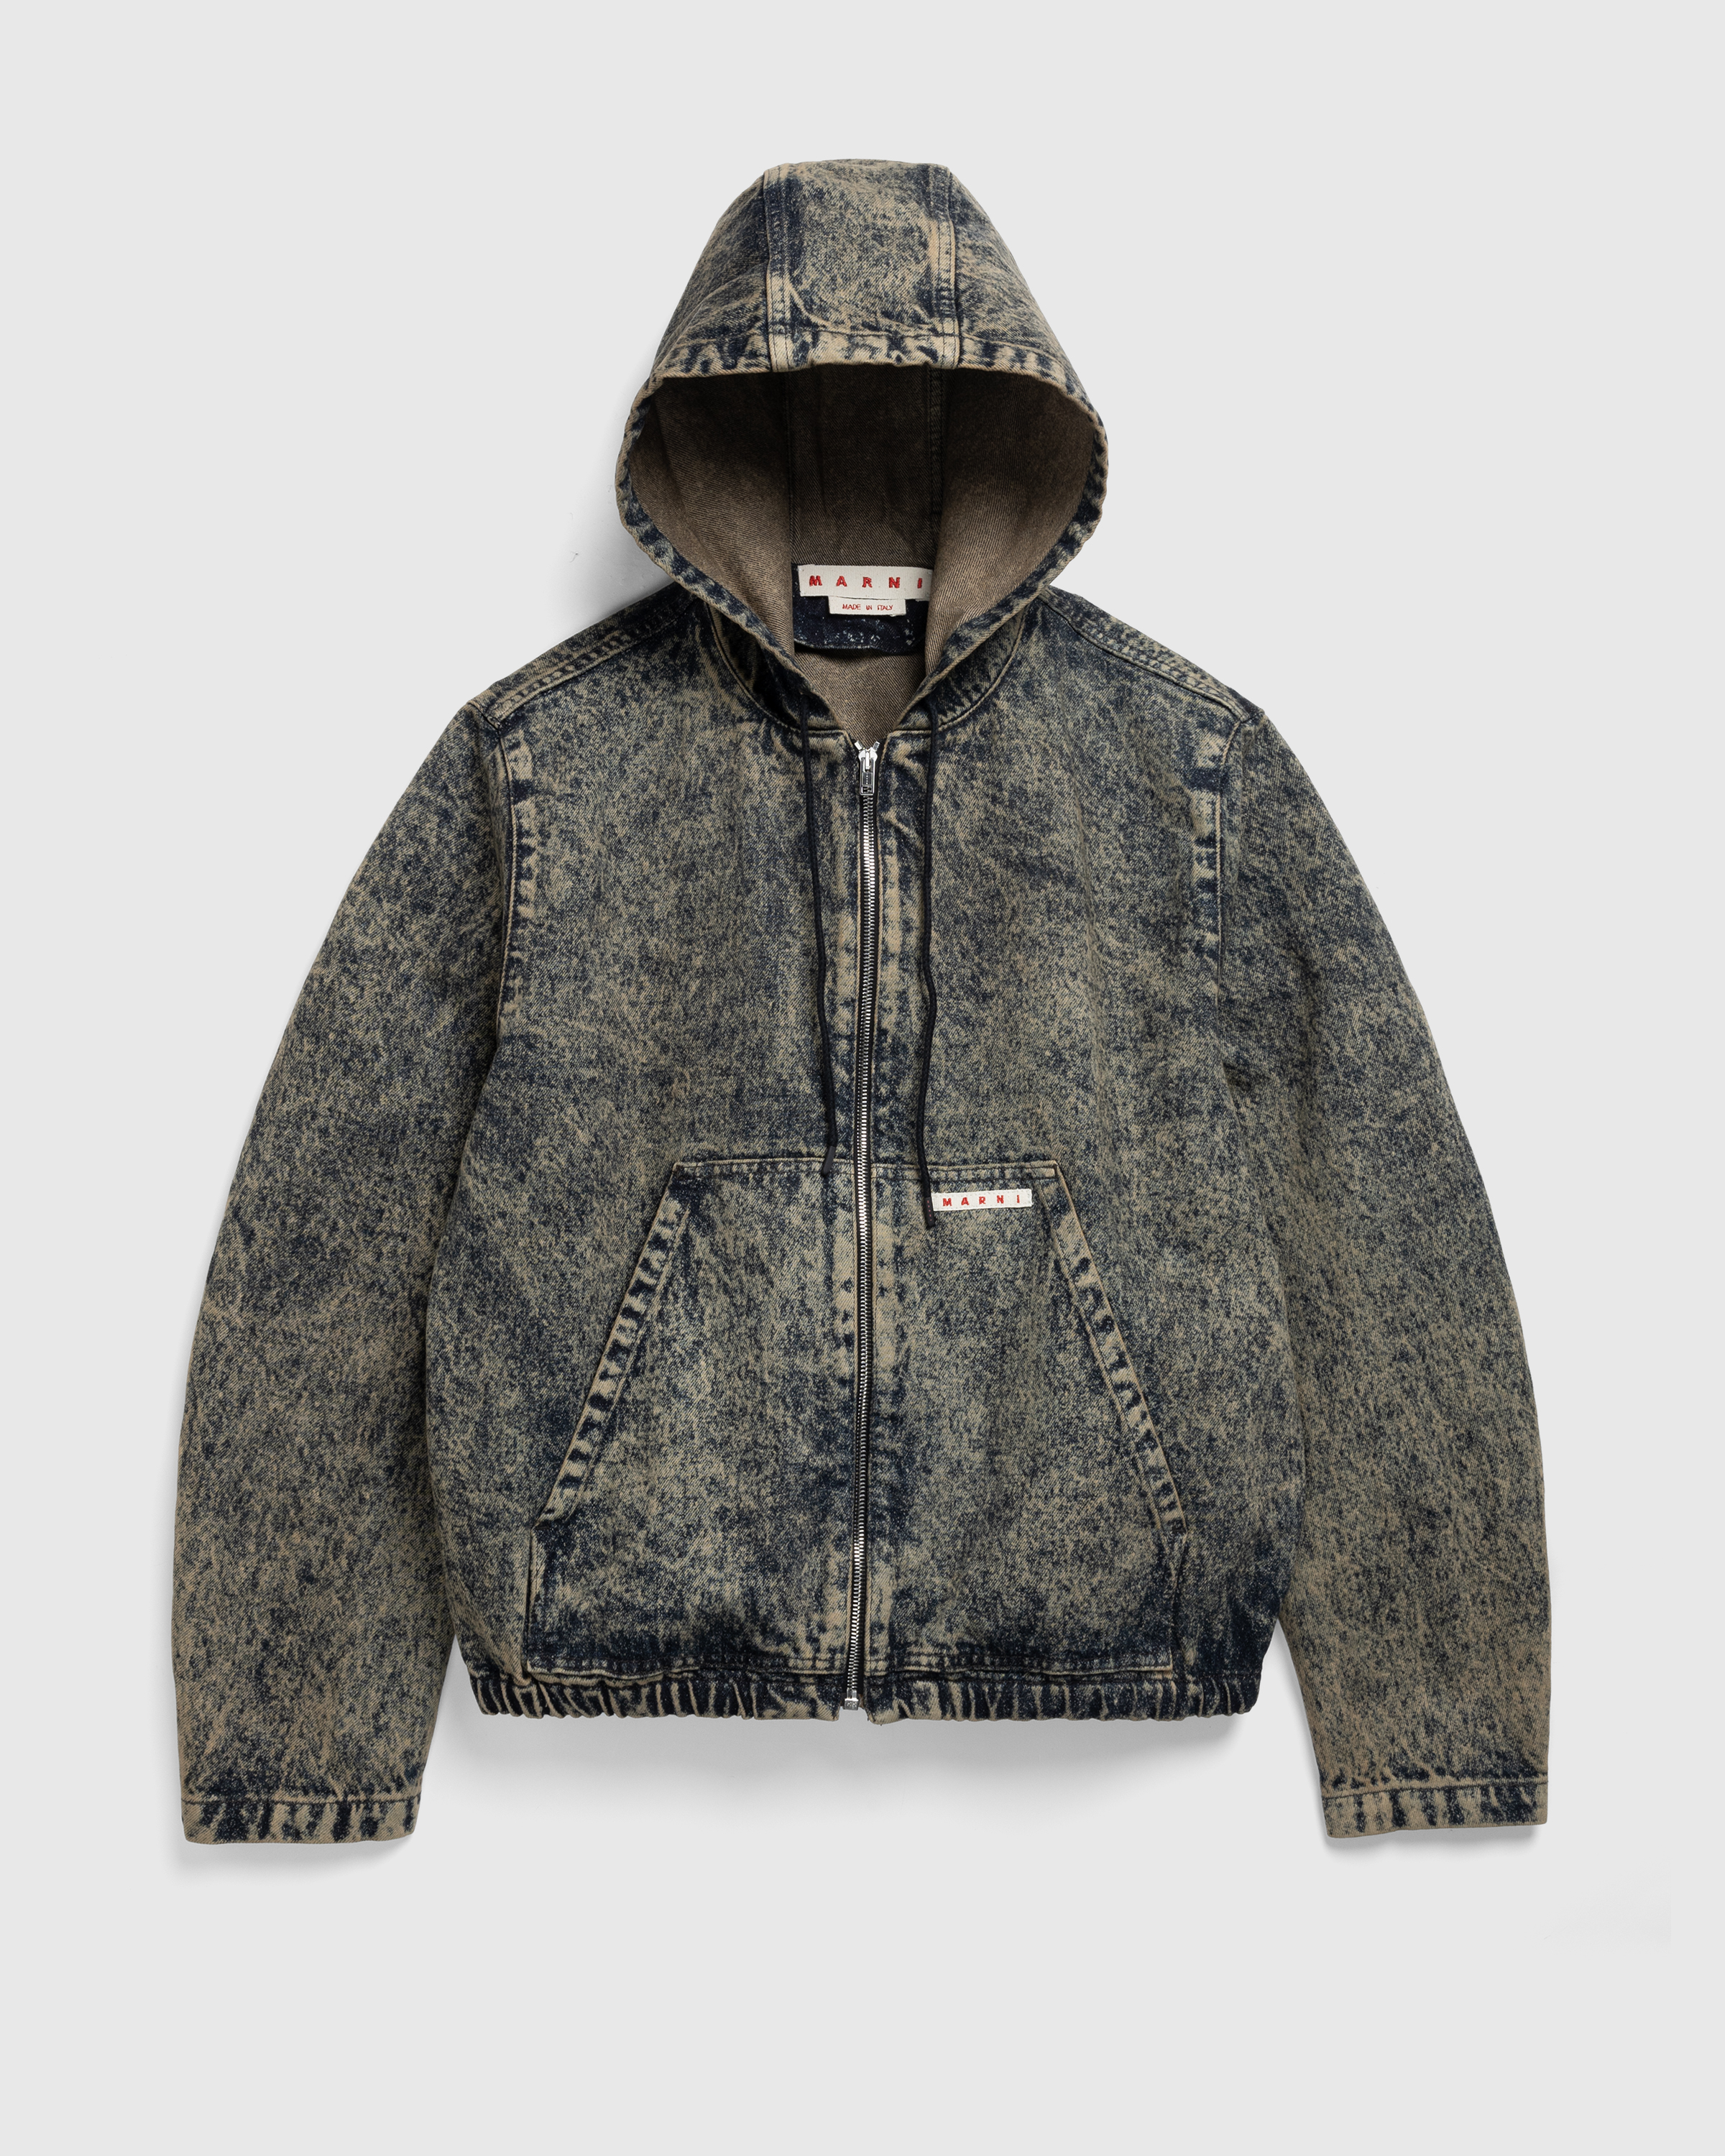 Marni – Hooded Jacket Nomad - Jackets - Green - Image 1